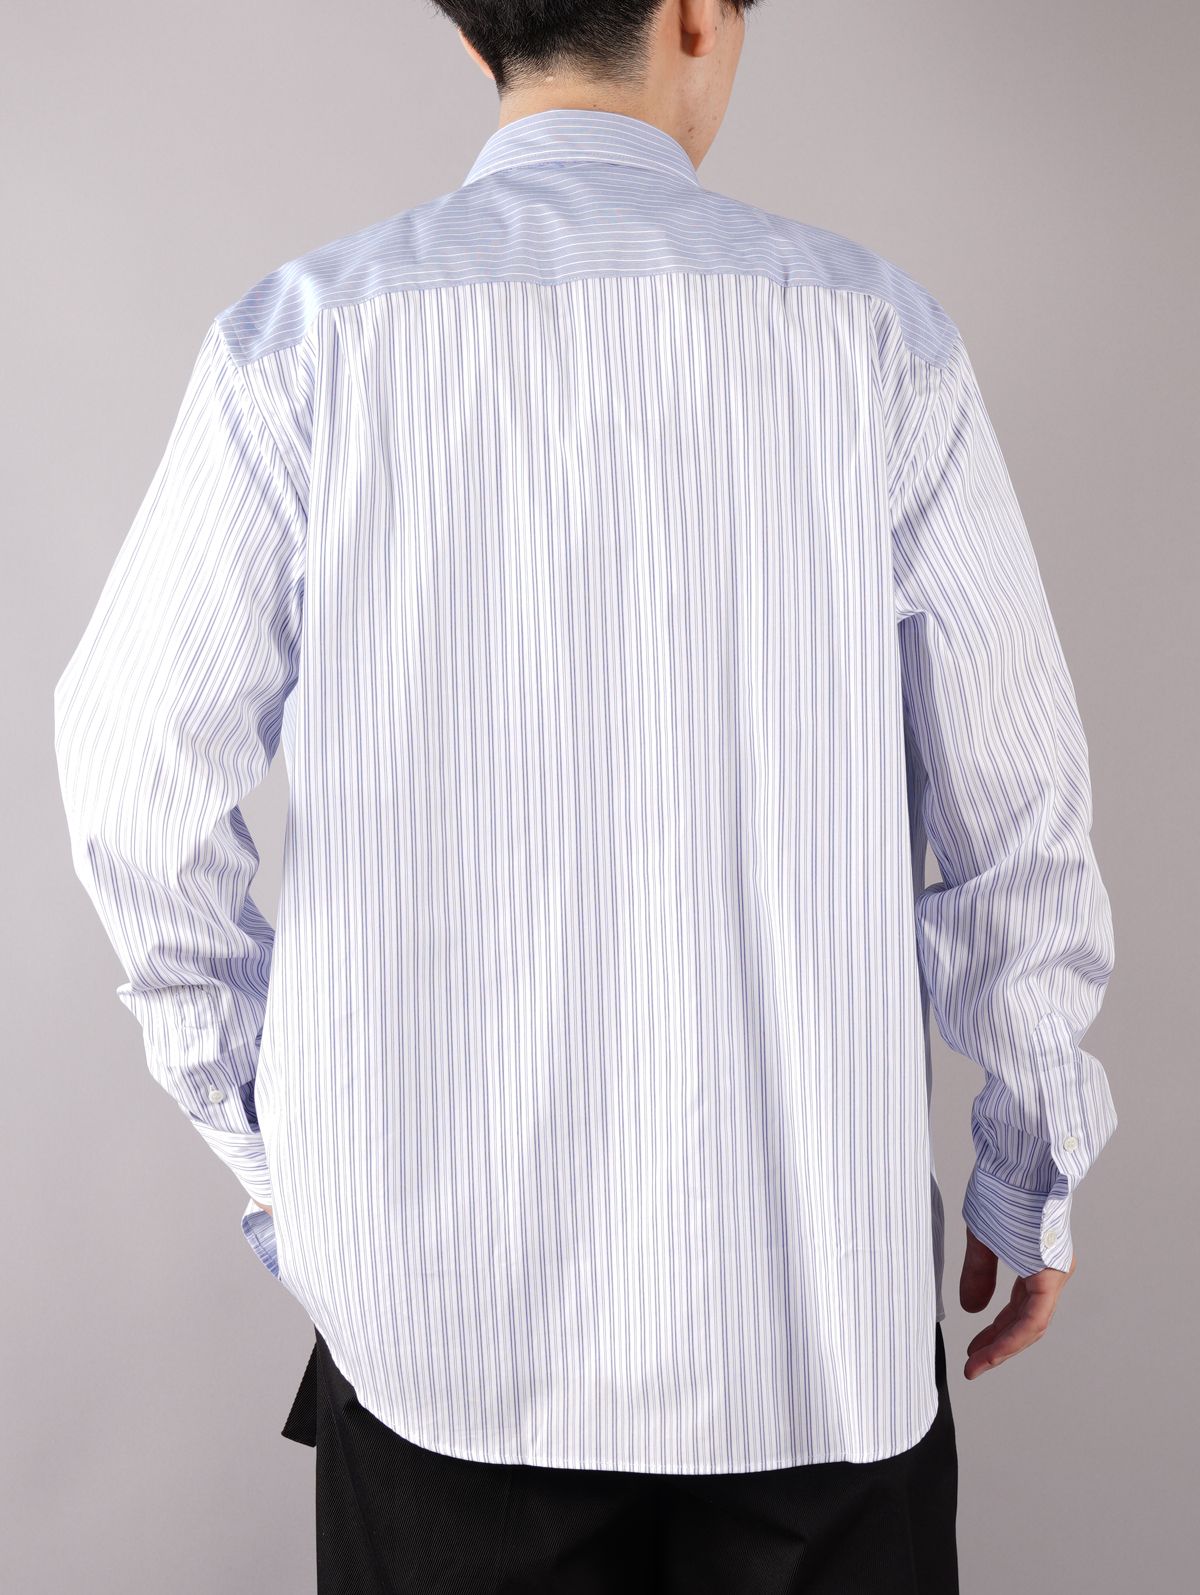 RELAXED STRIPE PATCHWORK SHIRT / リラックスド ストライプ パッチワークシャツ (ベイビーブルー) - 46